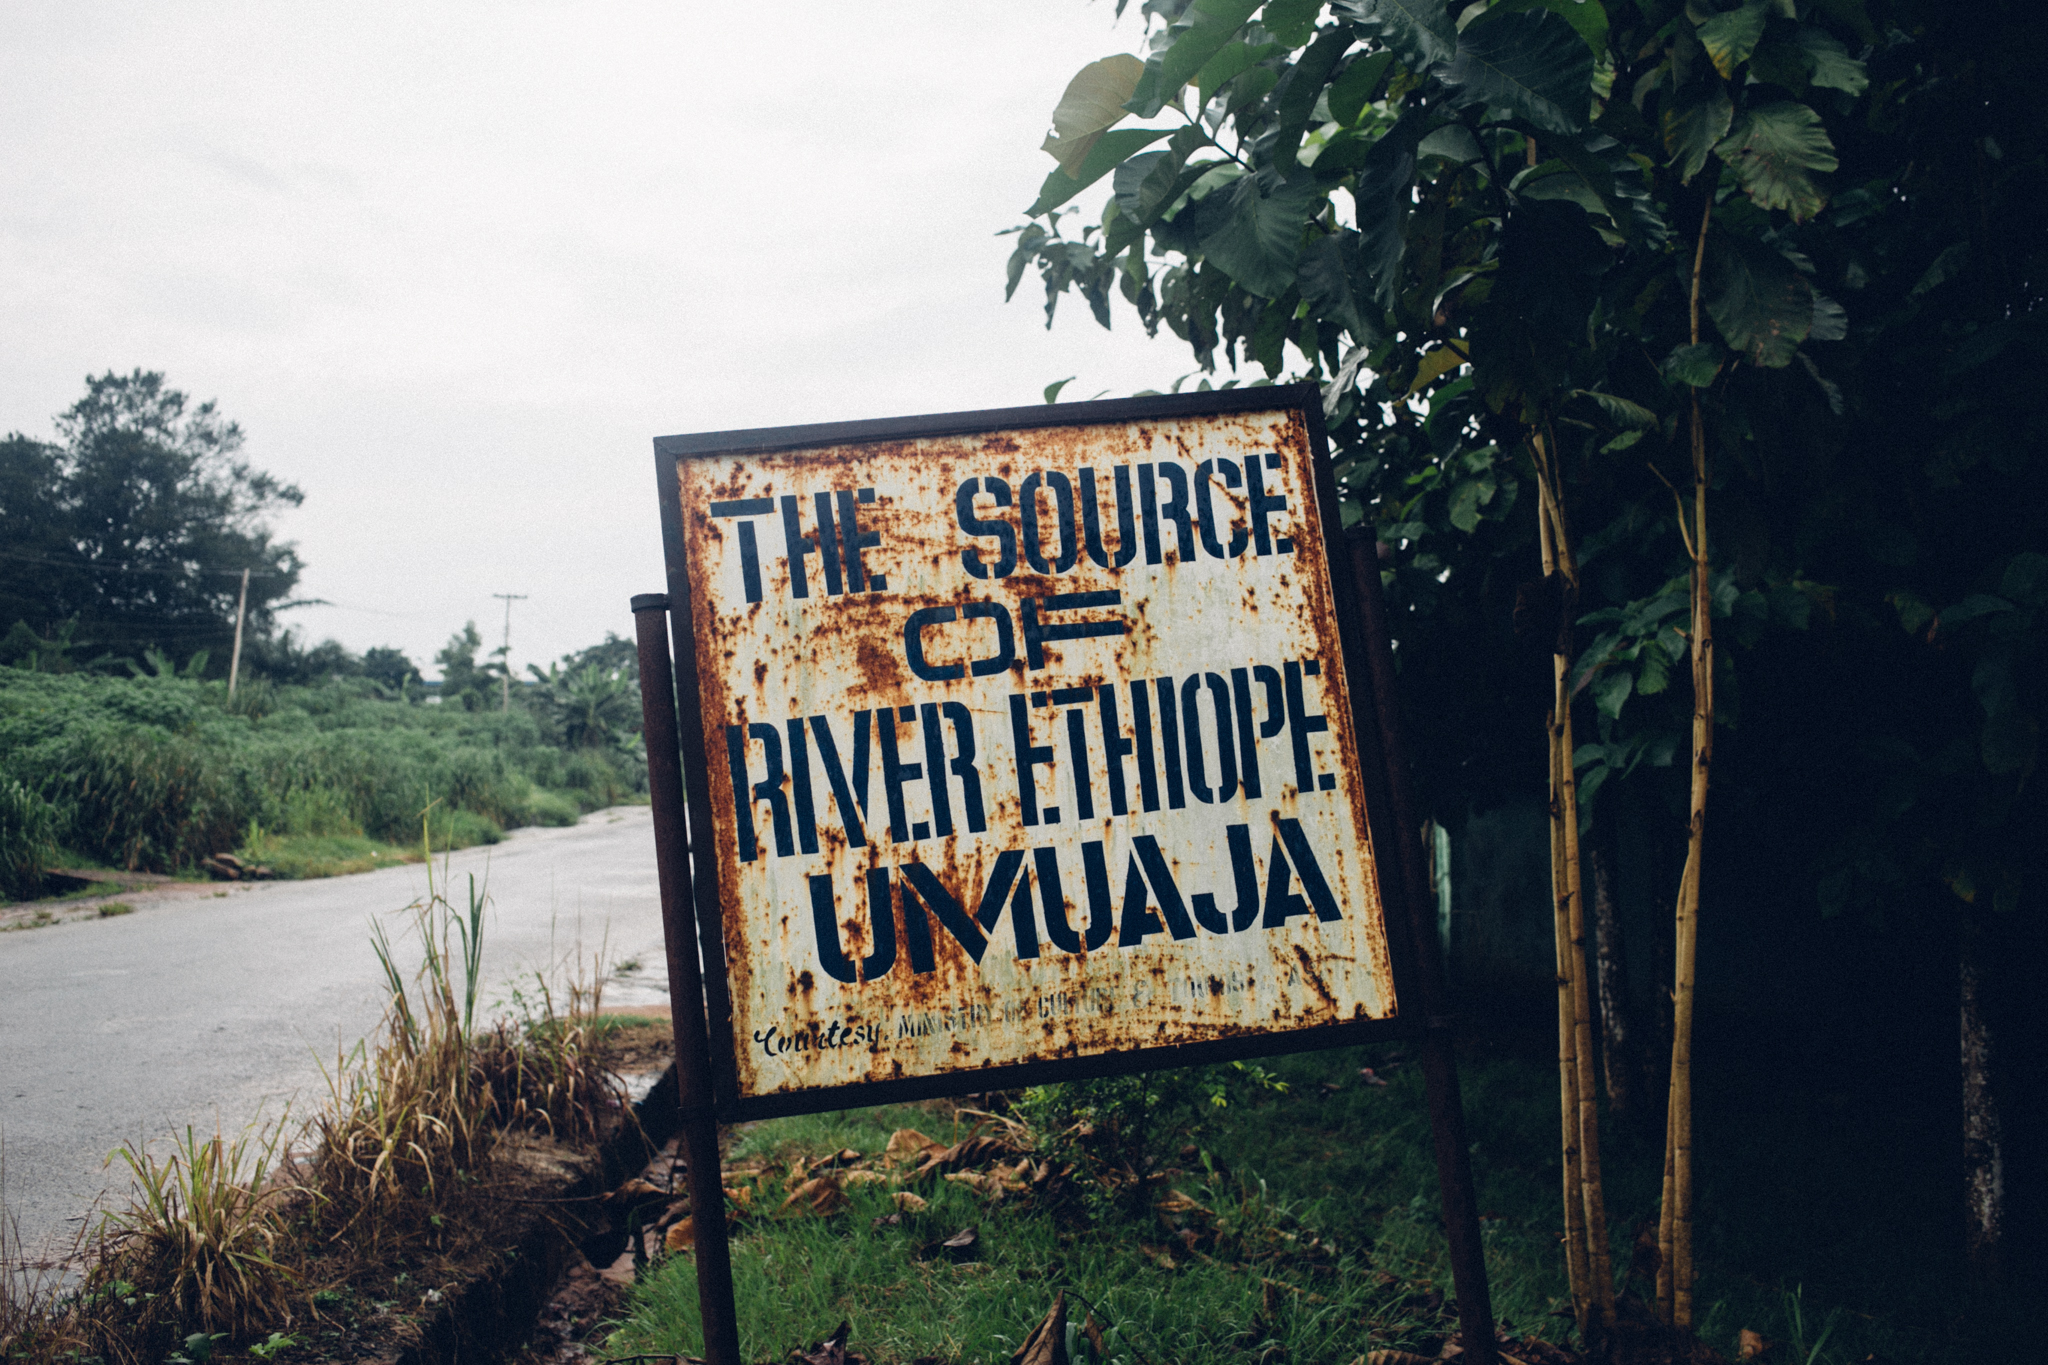 Umuaja, Source of River Ethiope